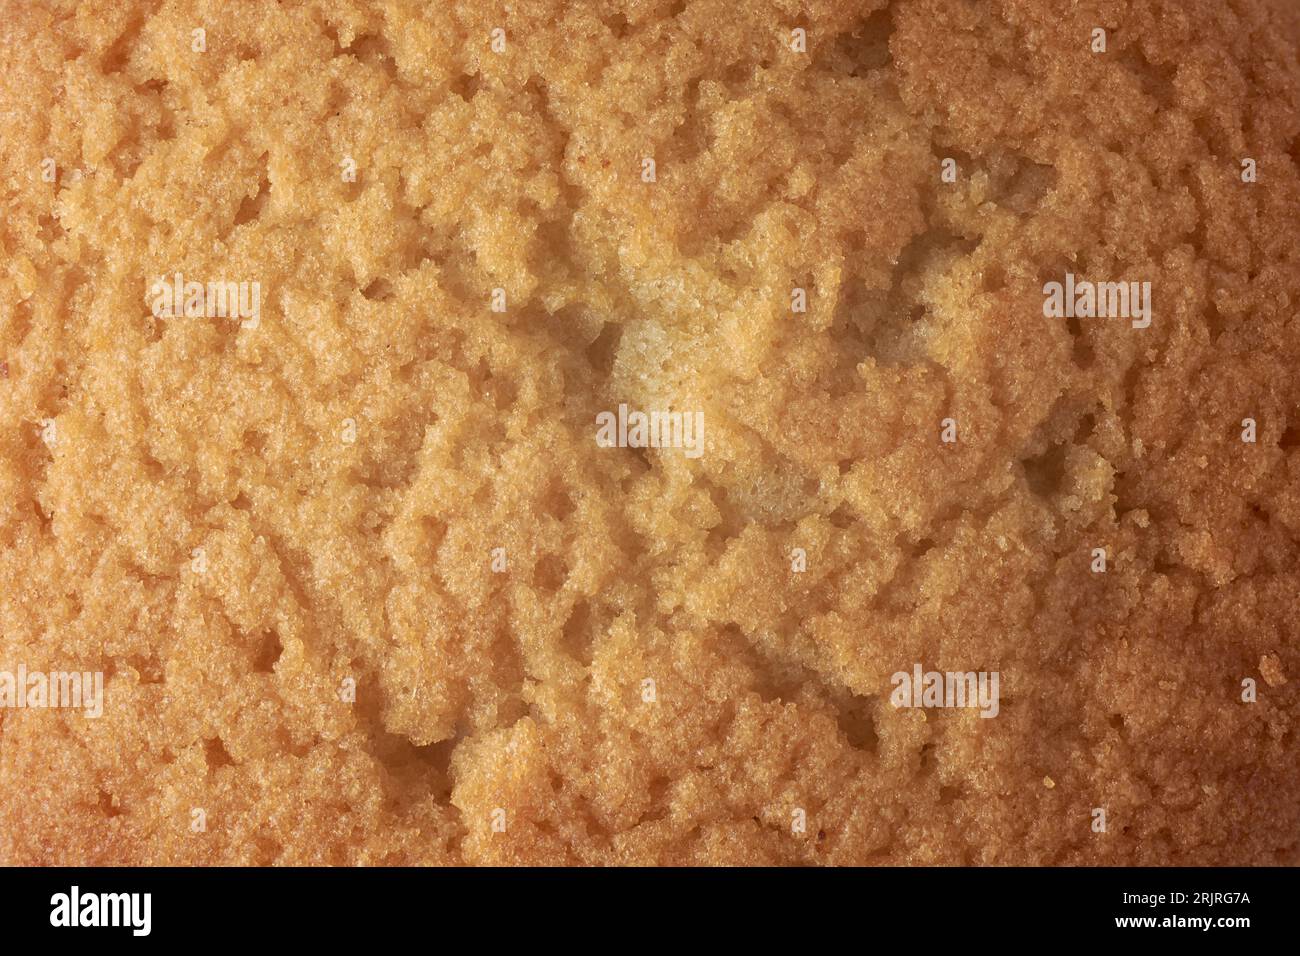 primer plano de la superficie de la torta, capa superior marrón dorada de bizcocho, taza o pastel de hadas o muffins, textura de marco completo, fondo de alimentos Foto de stock